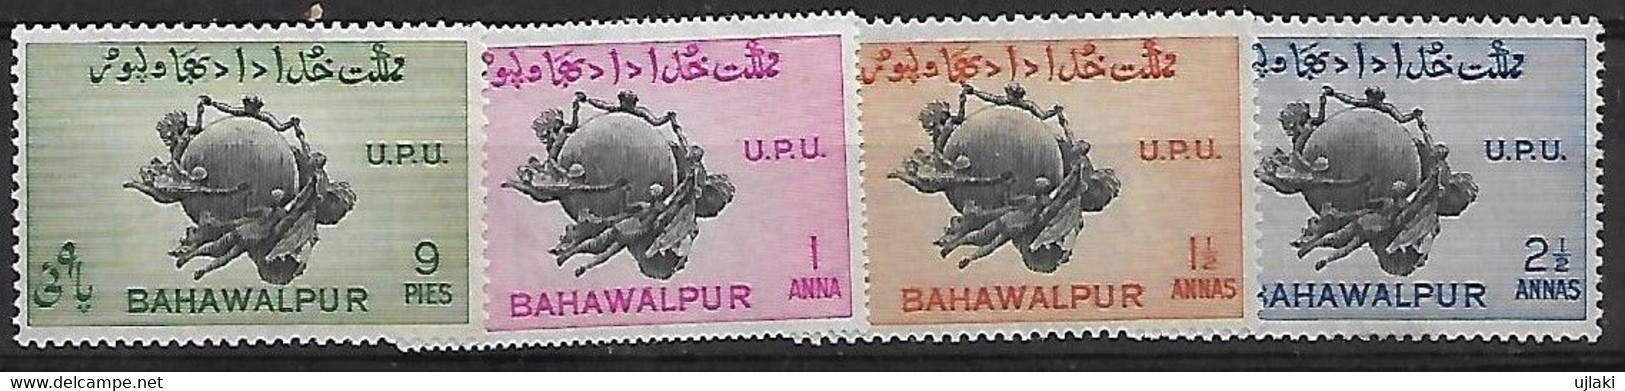 BAHAWALPUR   Série:75ème Anniversaire De L'UPU     N°26 à 29   Année 1949 - Bahawalpur